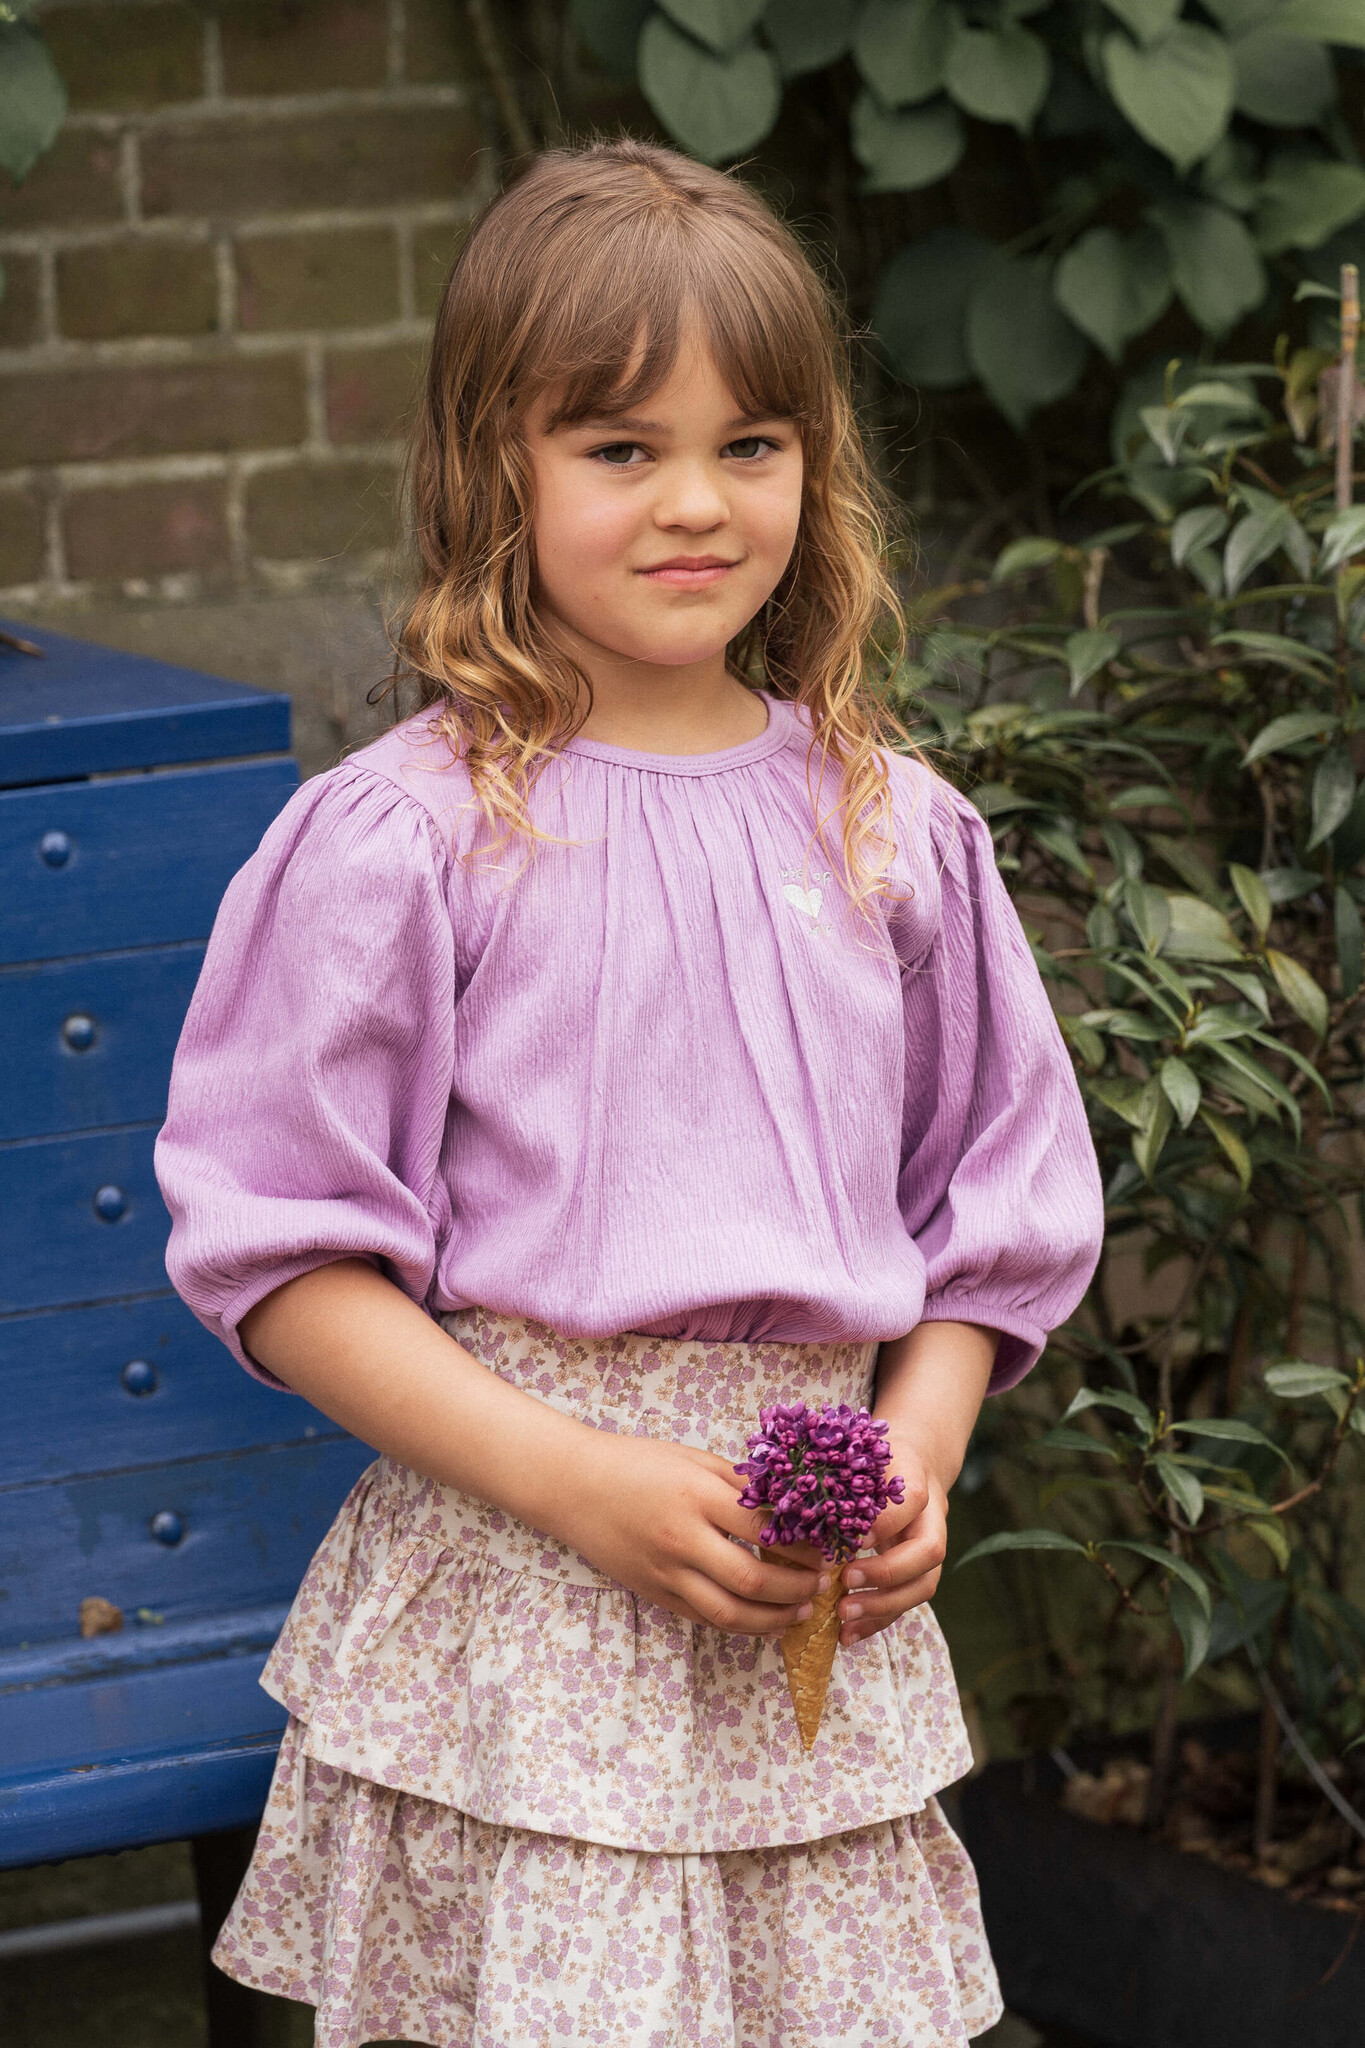 House of Jamie Ruffled skirt | Lavender Blossom